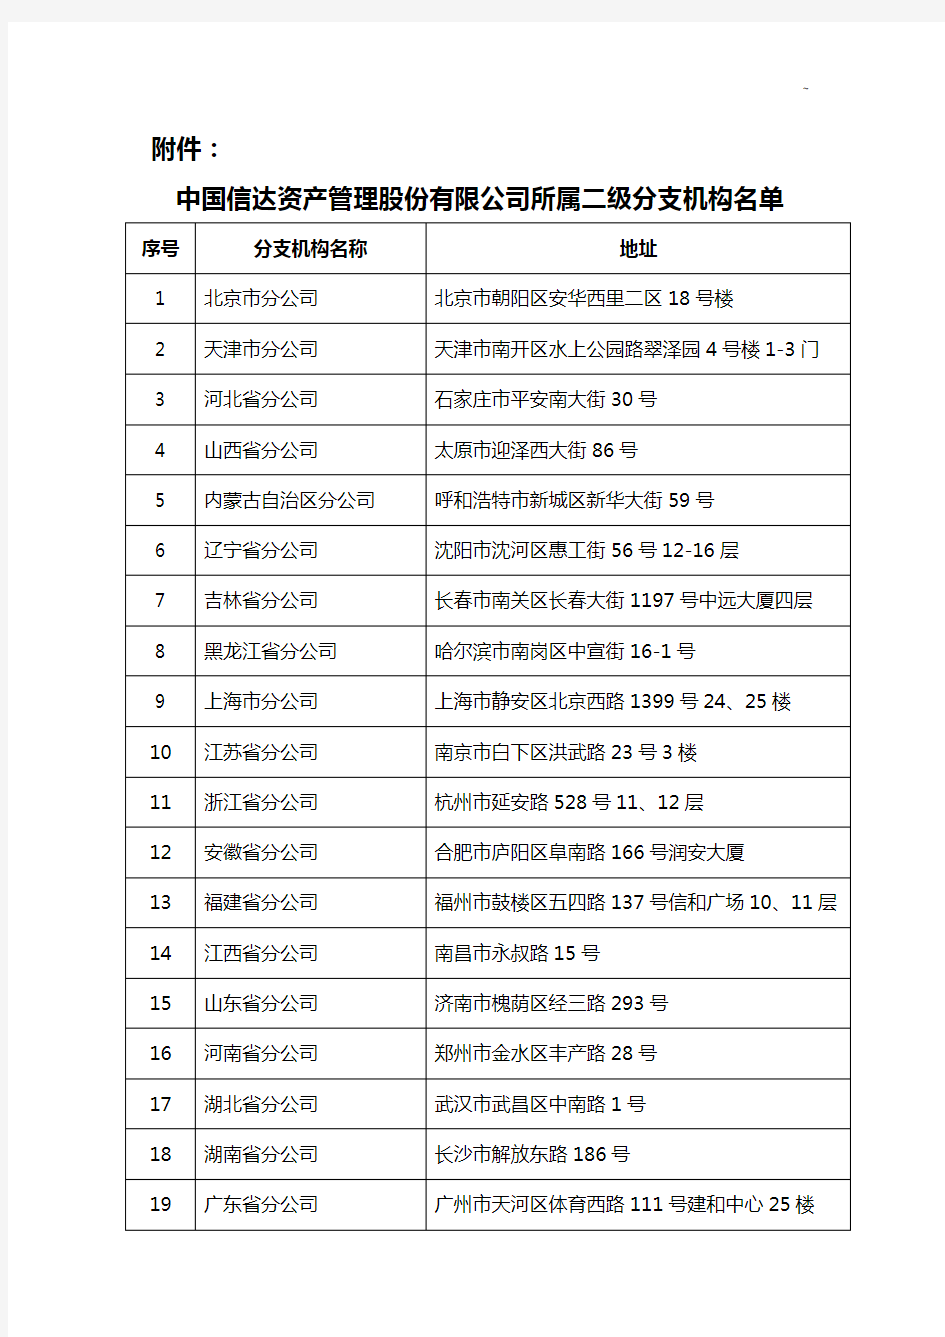 中国信达资产管理组织股份有限企业单位所属二级分支机构名单资料